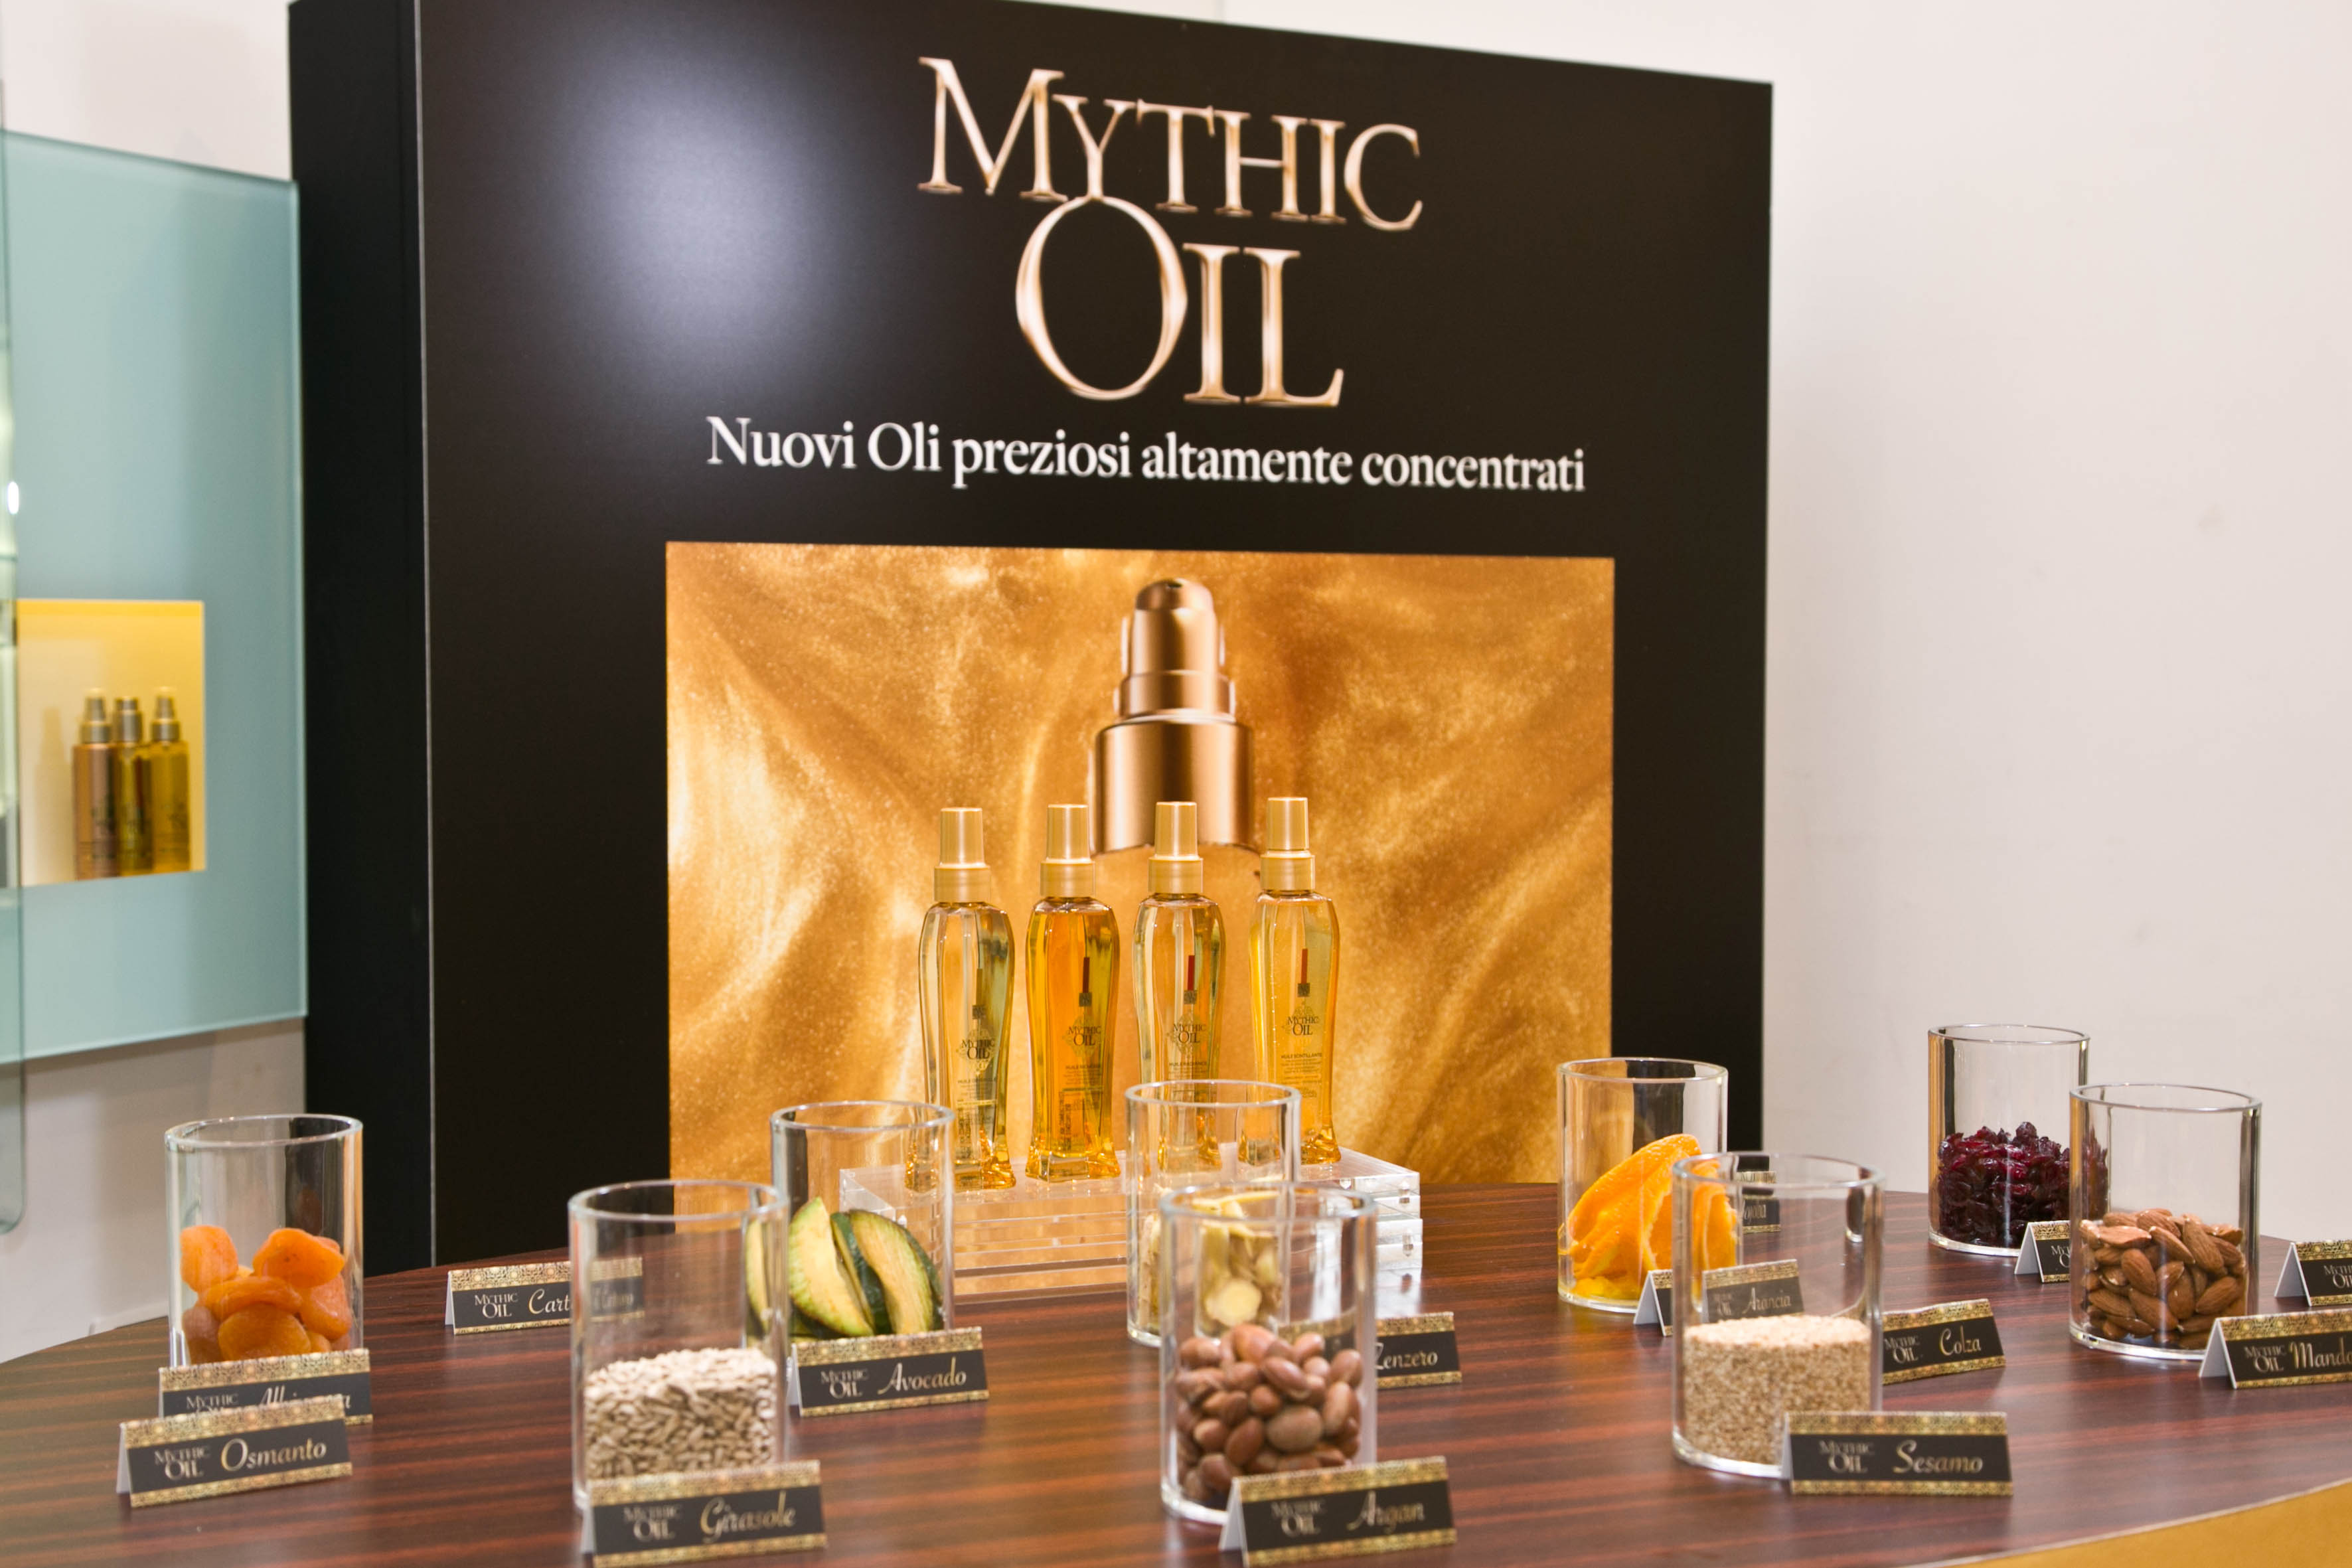 Mythic Oil: una nuova esperienza di benessere